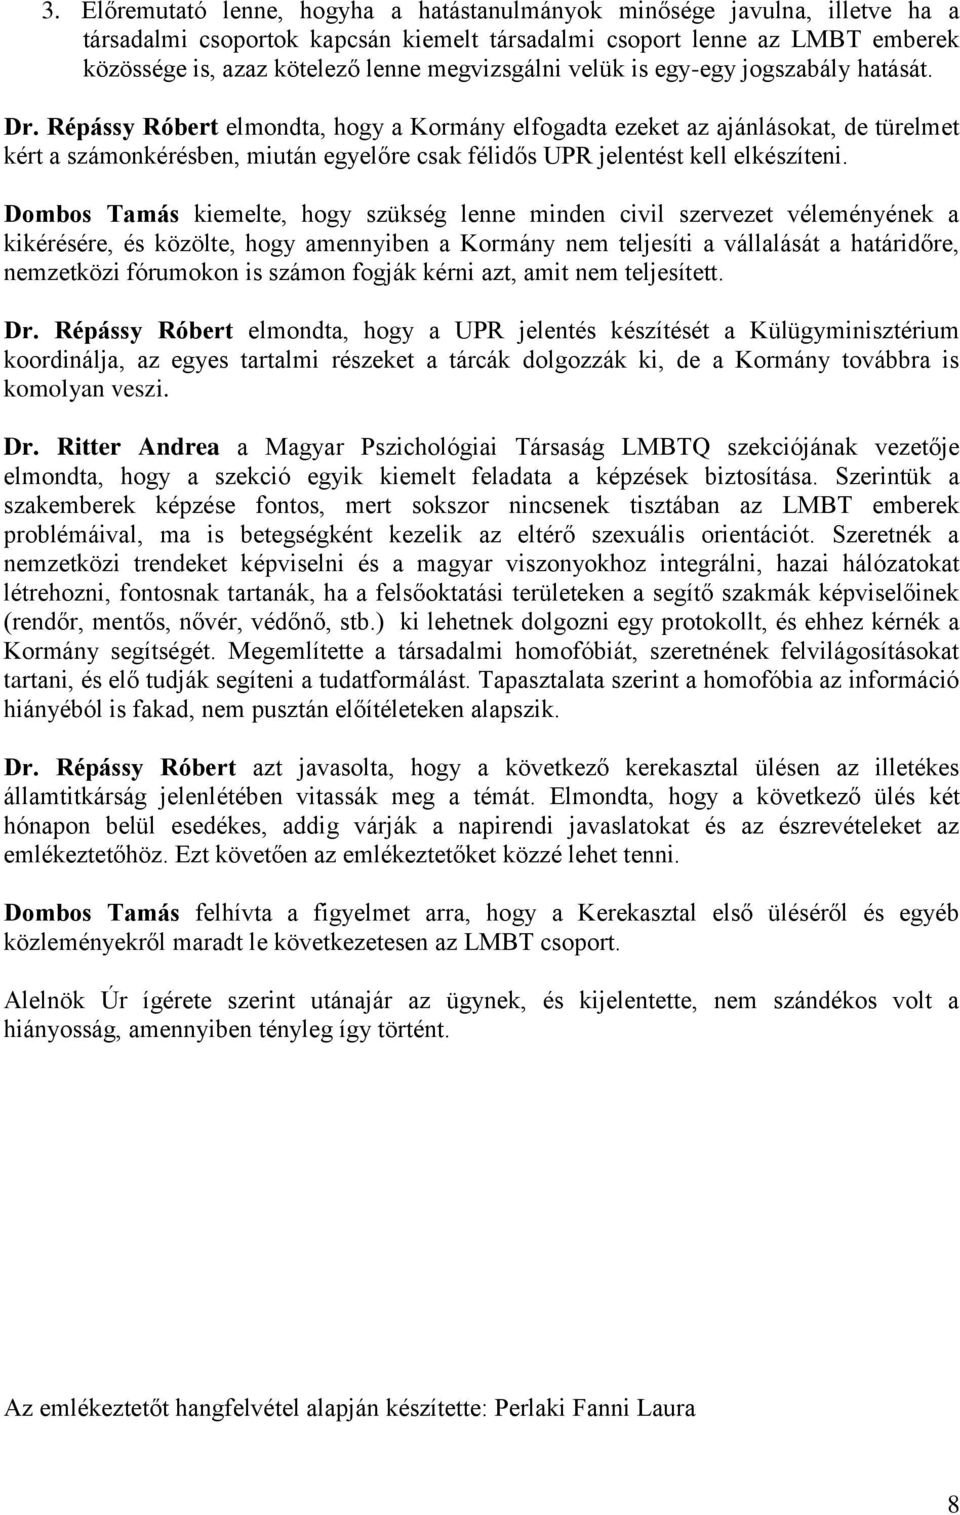 Répássy Róbert elmondta, hogy a Kormány elfogadta ezeket az ajánlásokat, de türelmet kért a számonkérésben, miután egyelőre csak félidős UPR jelentést kell elkészíteni.